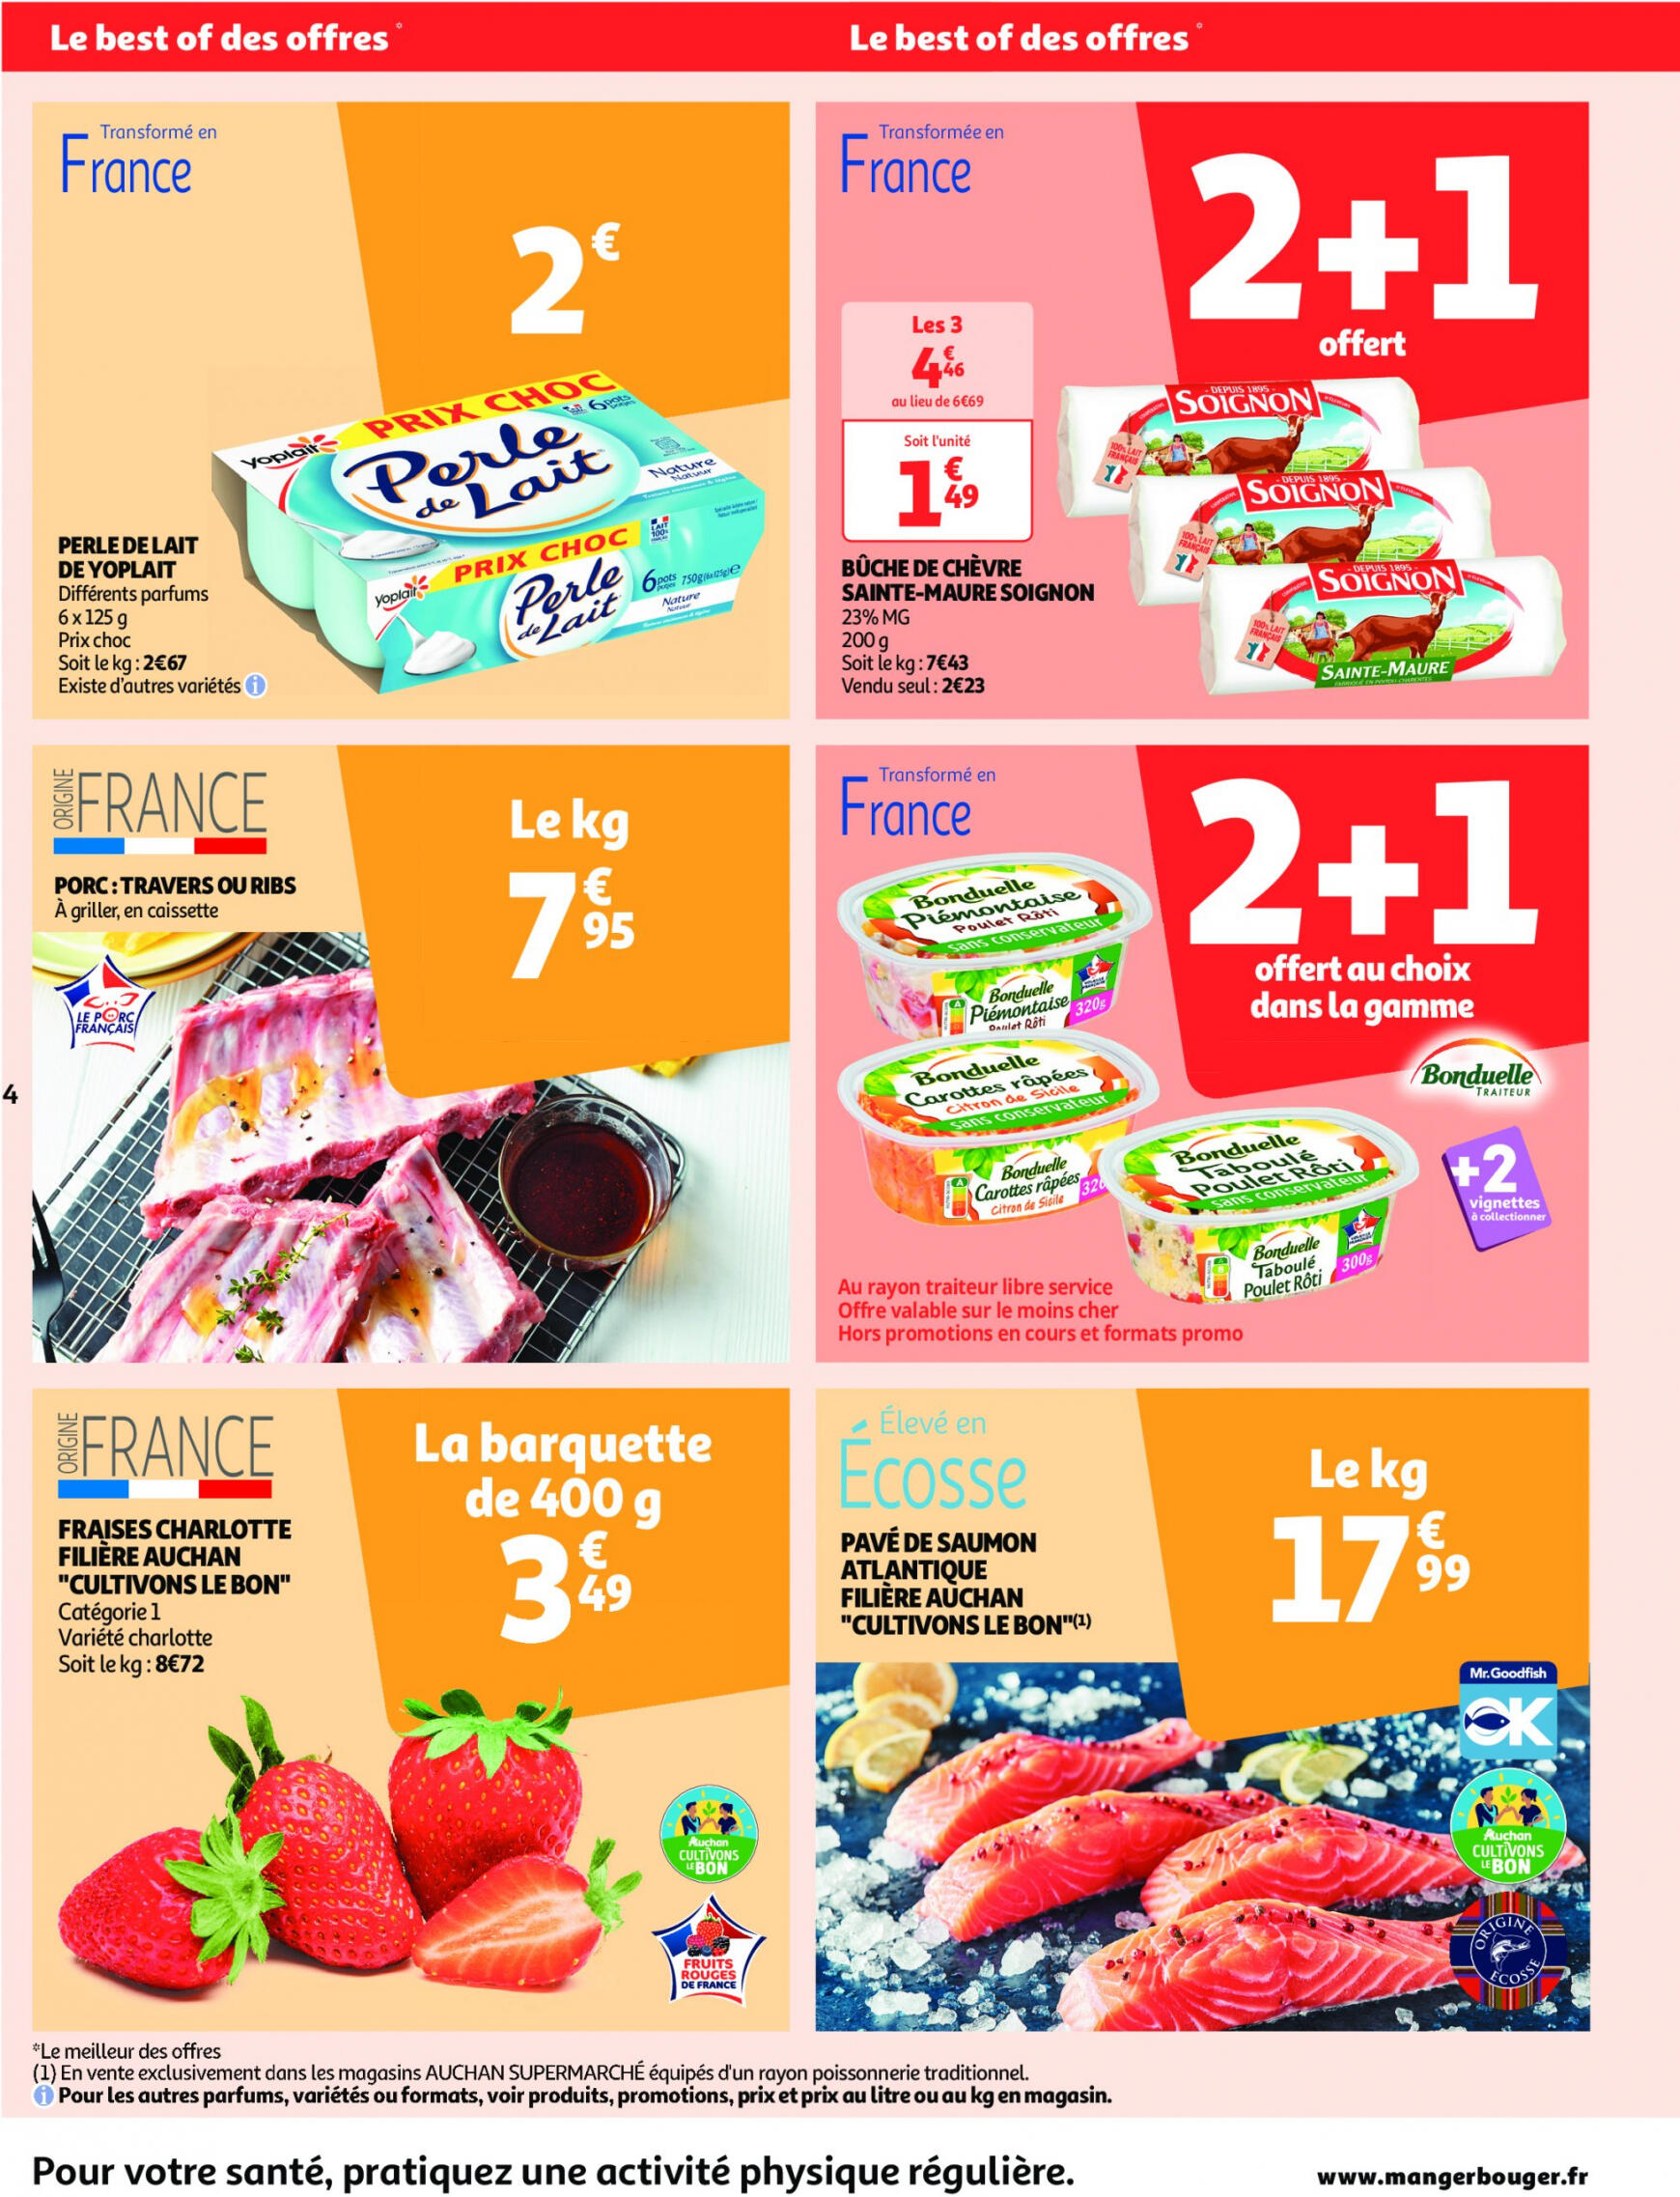 auchan - Auchan supermarché - Faites le plein de bonnes affaires folder huidig 22.05. - 26.05. - page: 4